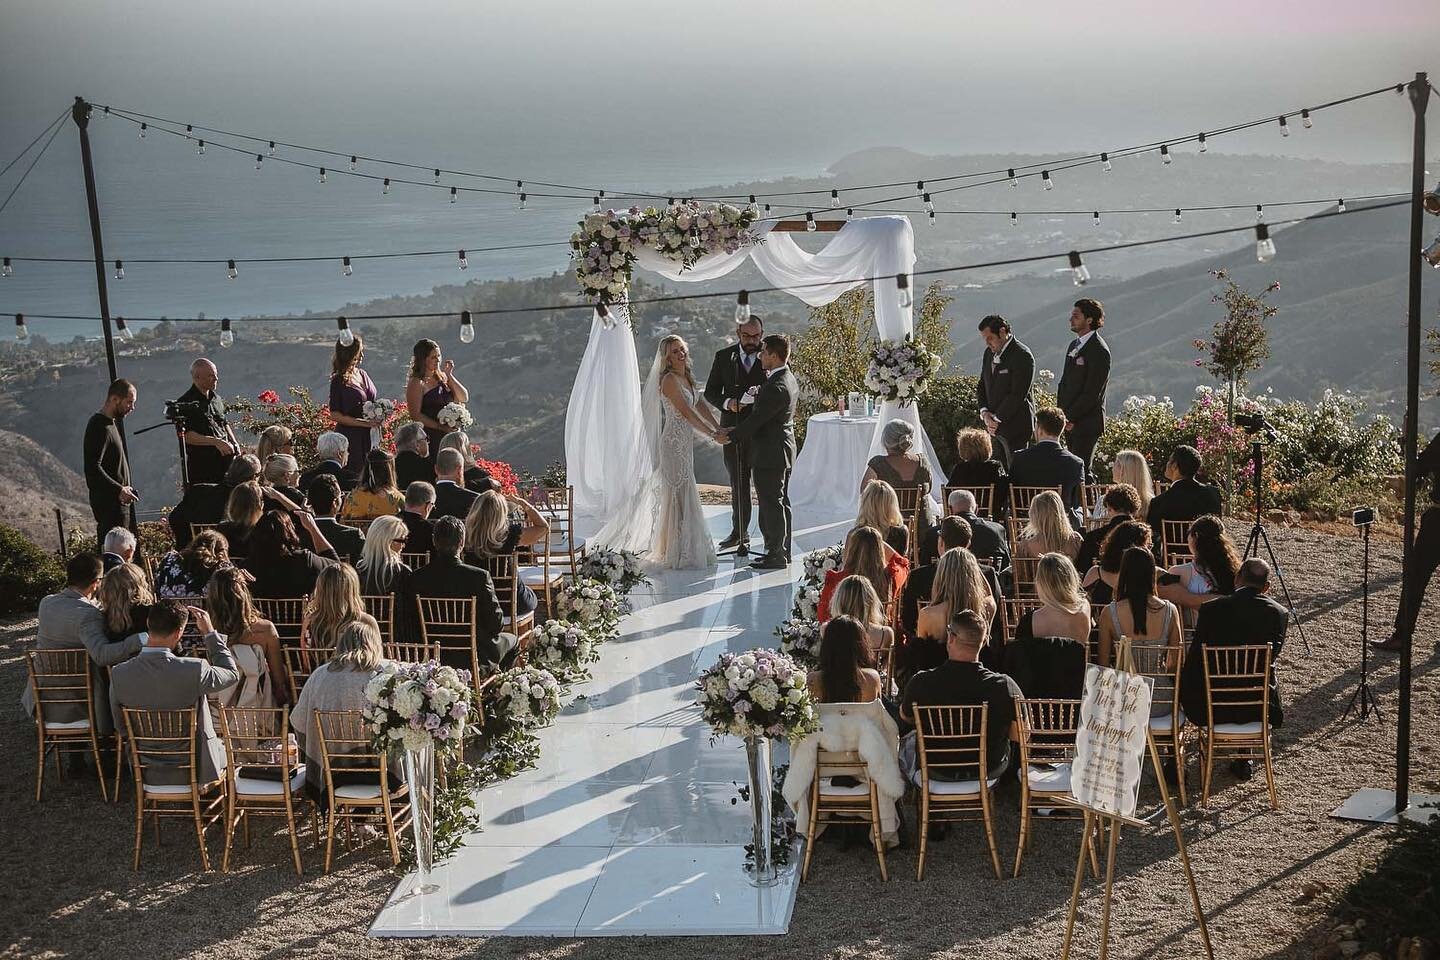 Malibu⁠
.⁠
.⁣⠀⁣⠀⁠
.⁣⠀⁣⠀⁠
.⁣⠀⁣⠀⁠
.⁣⠀⁣⠀⁠
.⁣⠀⁣⠀⁠
.⁣⠀⁣⠀⁠
.⁣⠀⁣⠀⁠
.⁣⠀⁣⠀⁠
#weddingphotos #weddingphotography⠀⠀⠀⠀⁣⠀⁣⠀⁠
#wedding⠀⠀⠀⠀⁣⠀⁣⠀⁠
#engagement #SanDiegoWeddingPhotographer #SanDiegoWeddingPhotography⠀⠀⠀⠀⁣⠀⁣ ⠀#sdweddingphotographer⠀⠀⠀⠀⁣⠀⁣⠀⁠
#sdphotograp